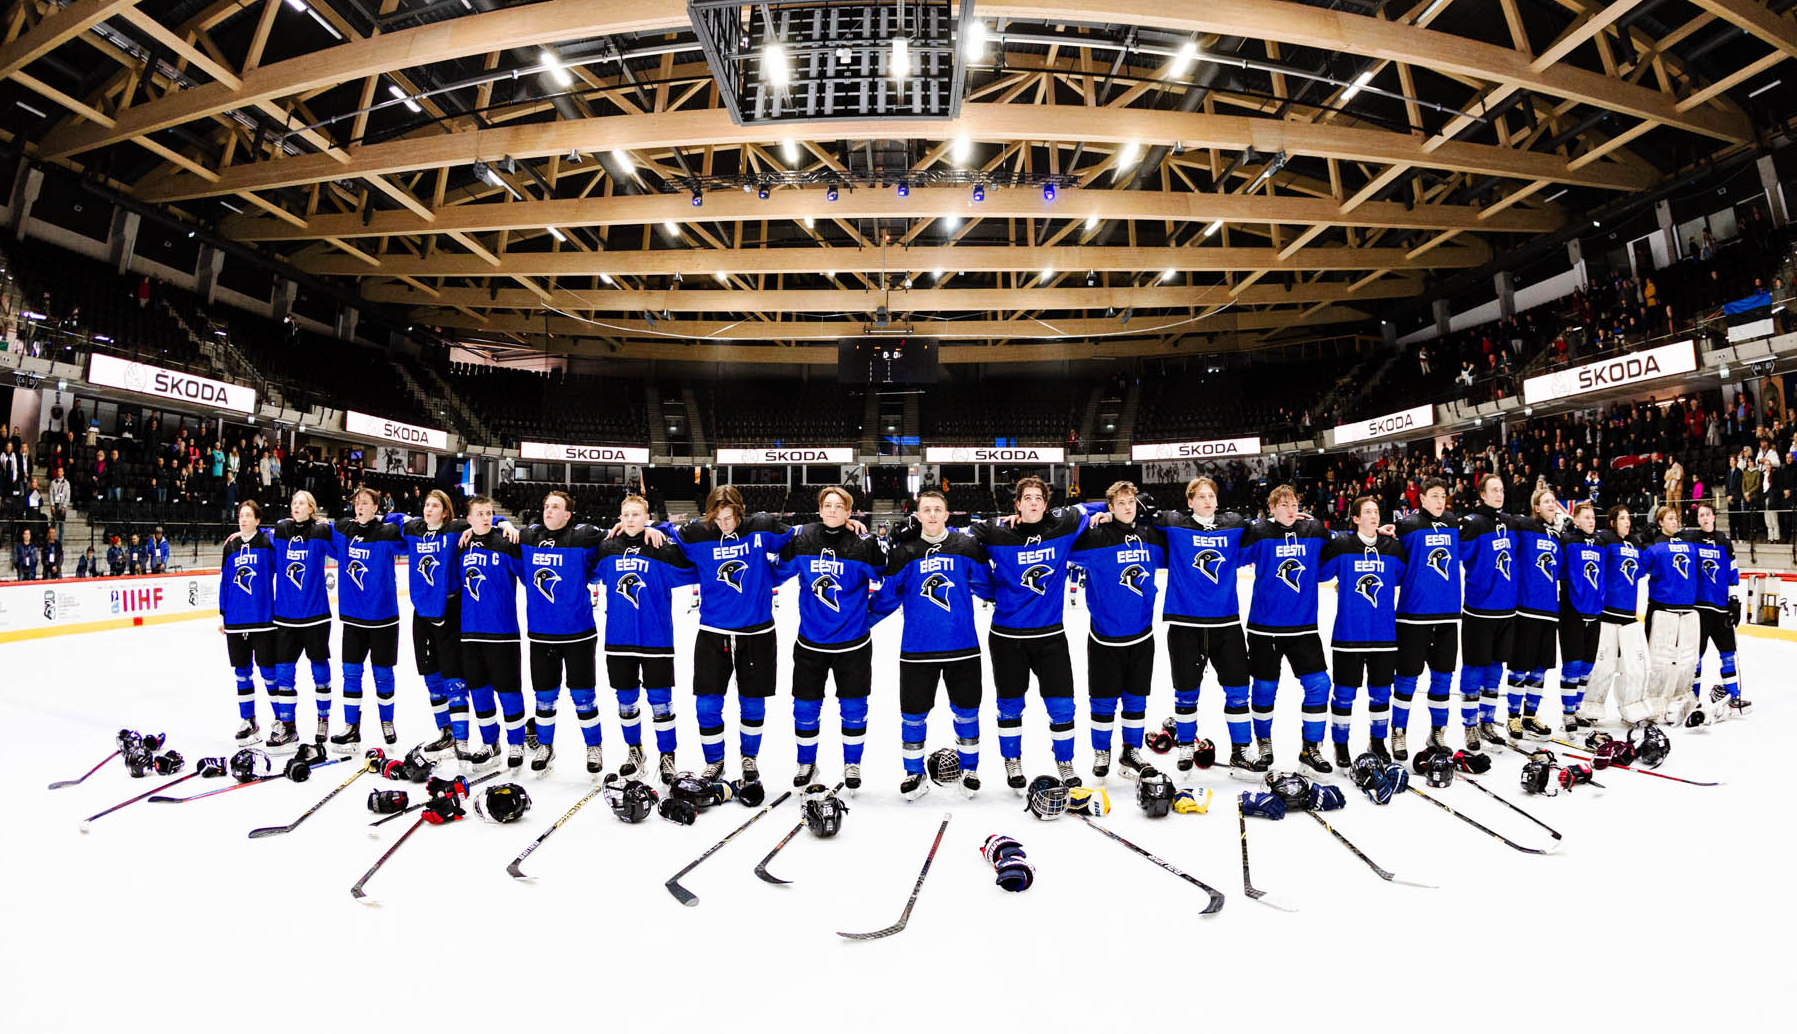 Сборная Эстонии по хоккею. Эстонская команда любителей по хоккею. К-команда Эстония. Tondiraba Huvikool.